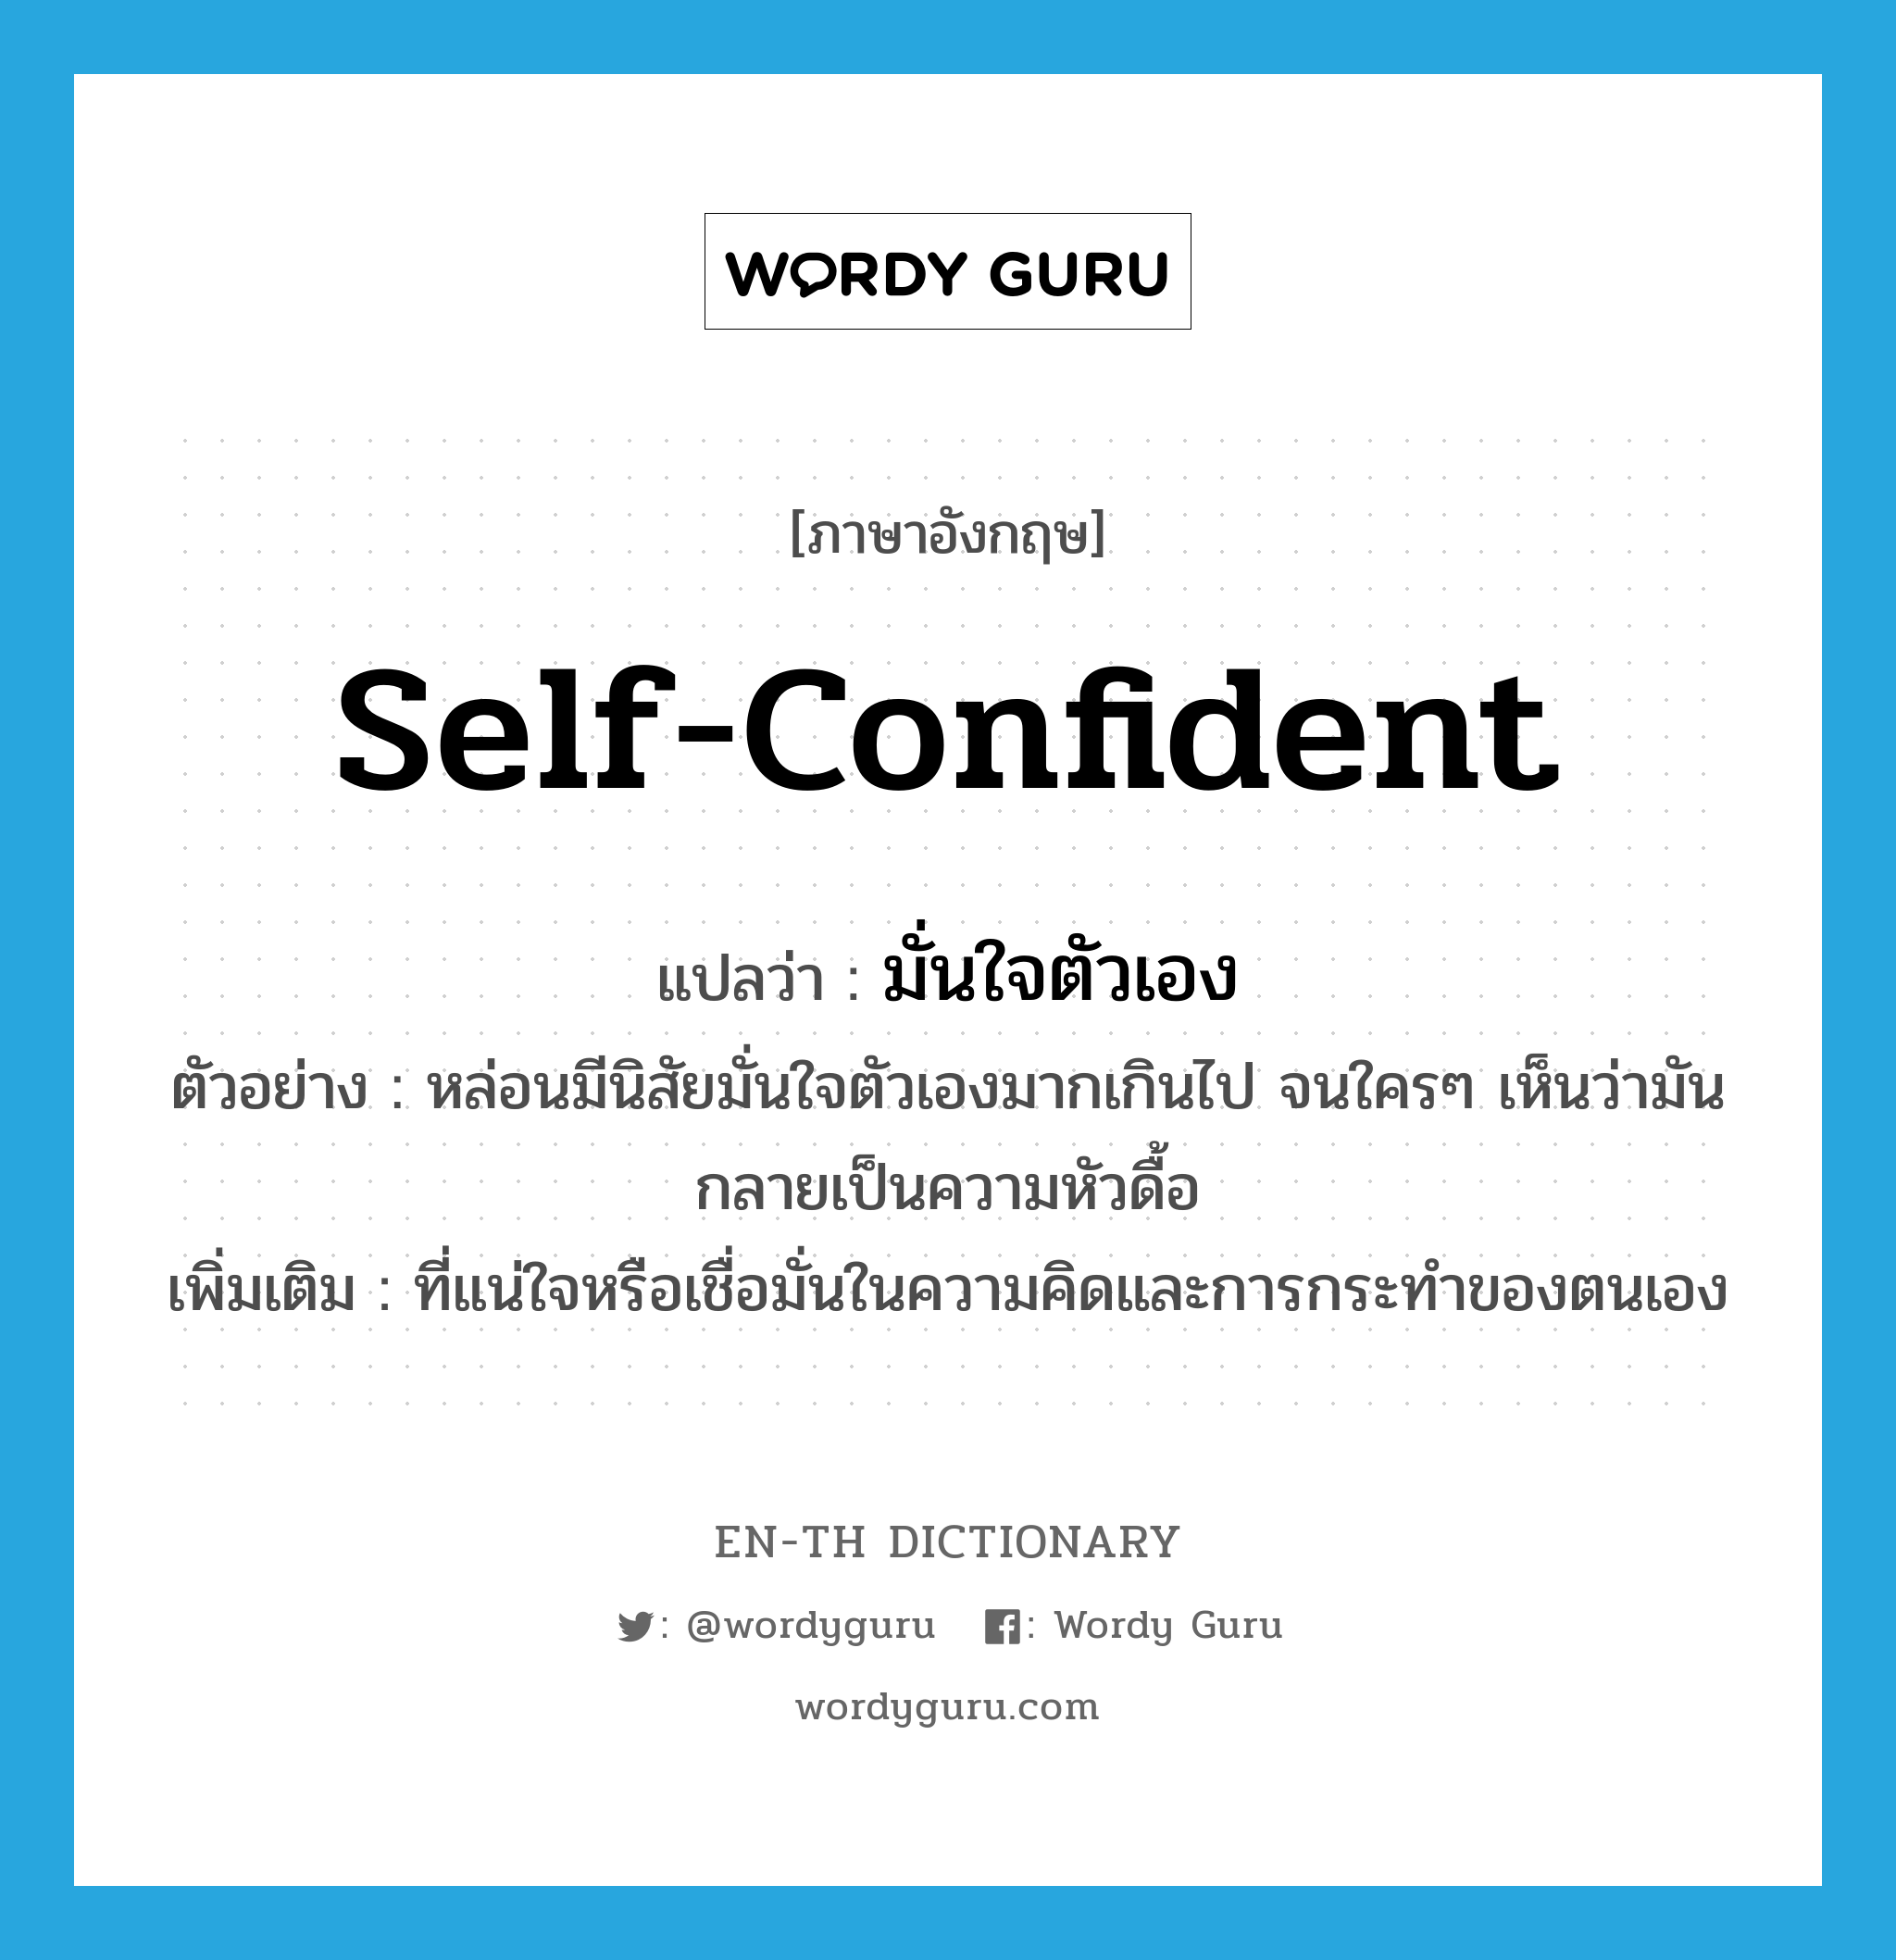 self-confident แปลว่า?, คำศัพท์ภาษาอังกฤษ self-confident แปลว่า มั่นใจตัวเอง ประเภท ADJ ตัวอย่าง หล่อนมีนิสัยมั่นใจตัวเองมากเกินไป จนใครๆ เห็นว่ามันกลายเป็นความหัวดื้อ เพิ่มเติม ที่แน่ใจหรือเชื่อมั่นในความคิดและการกระทำของตนเอง หมวด ADJ